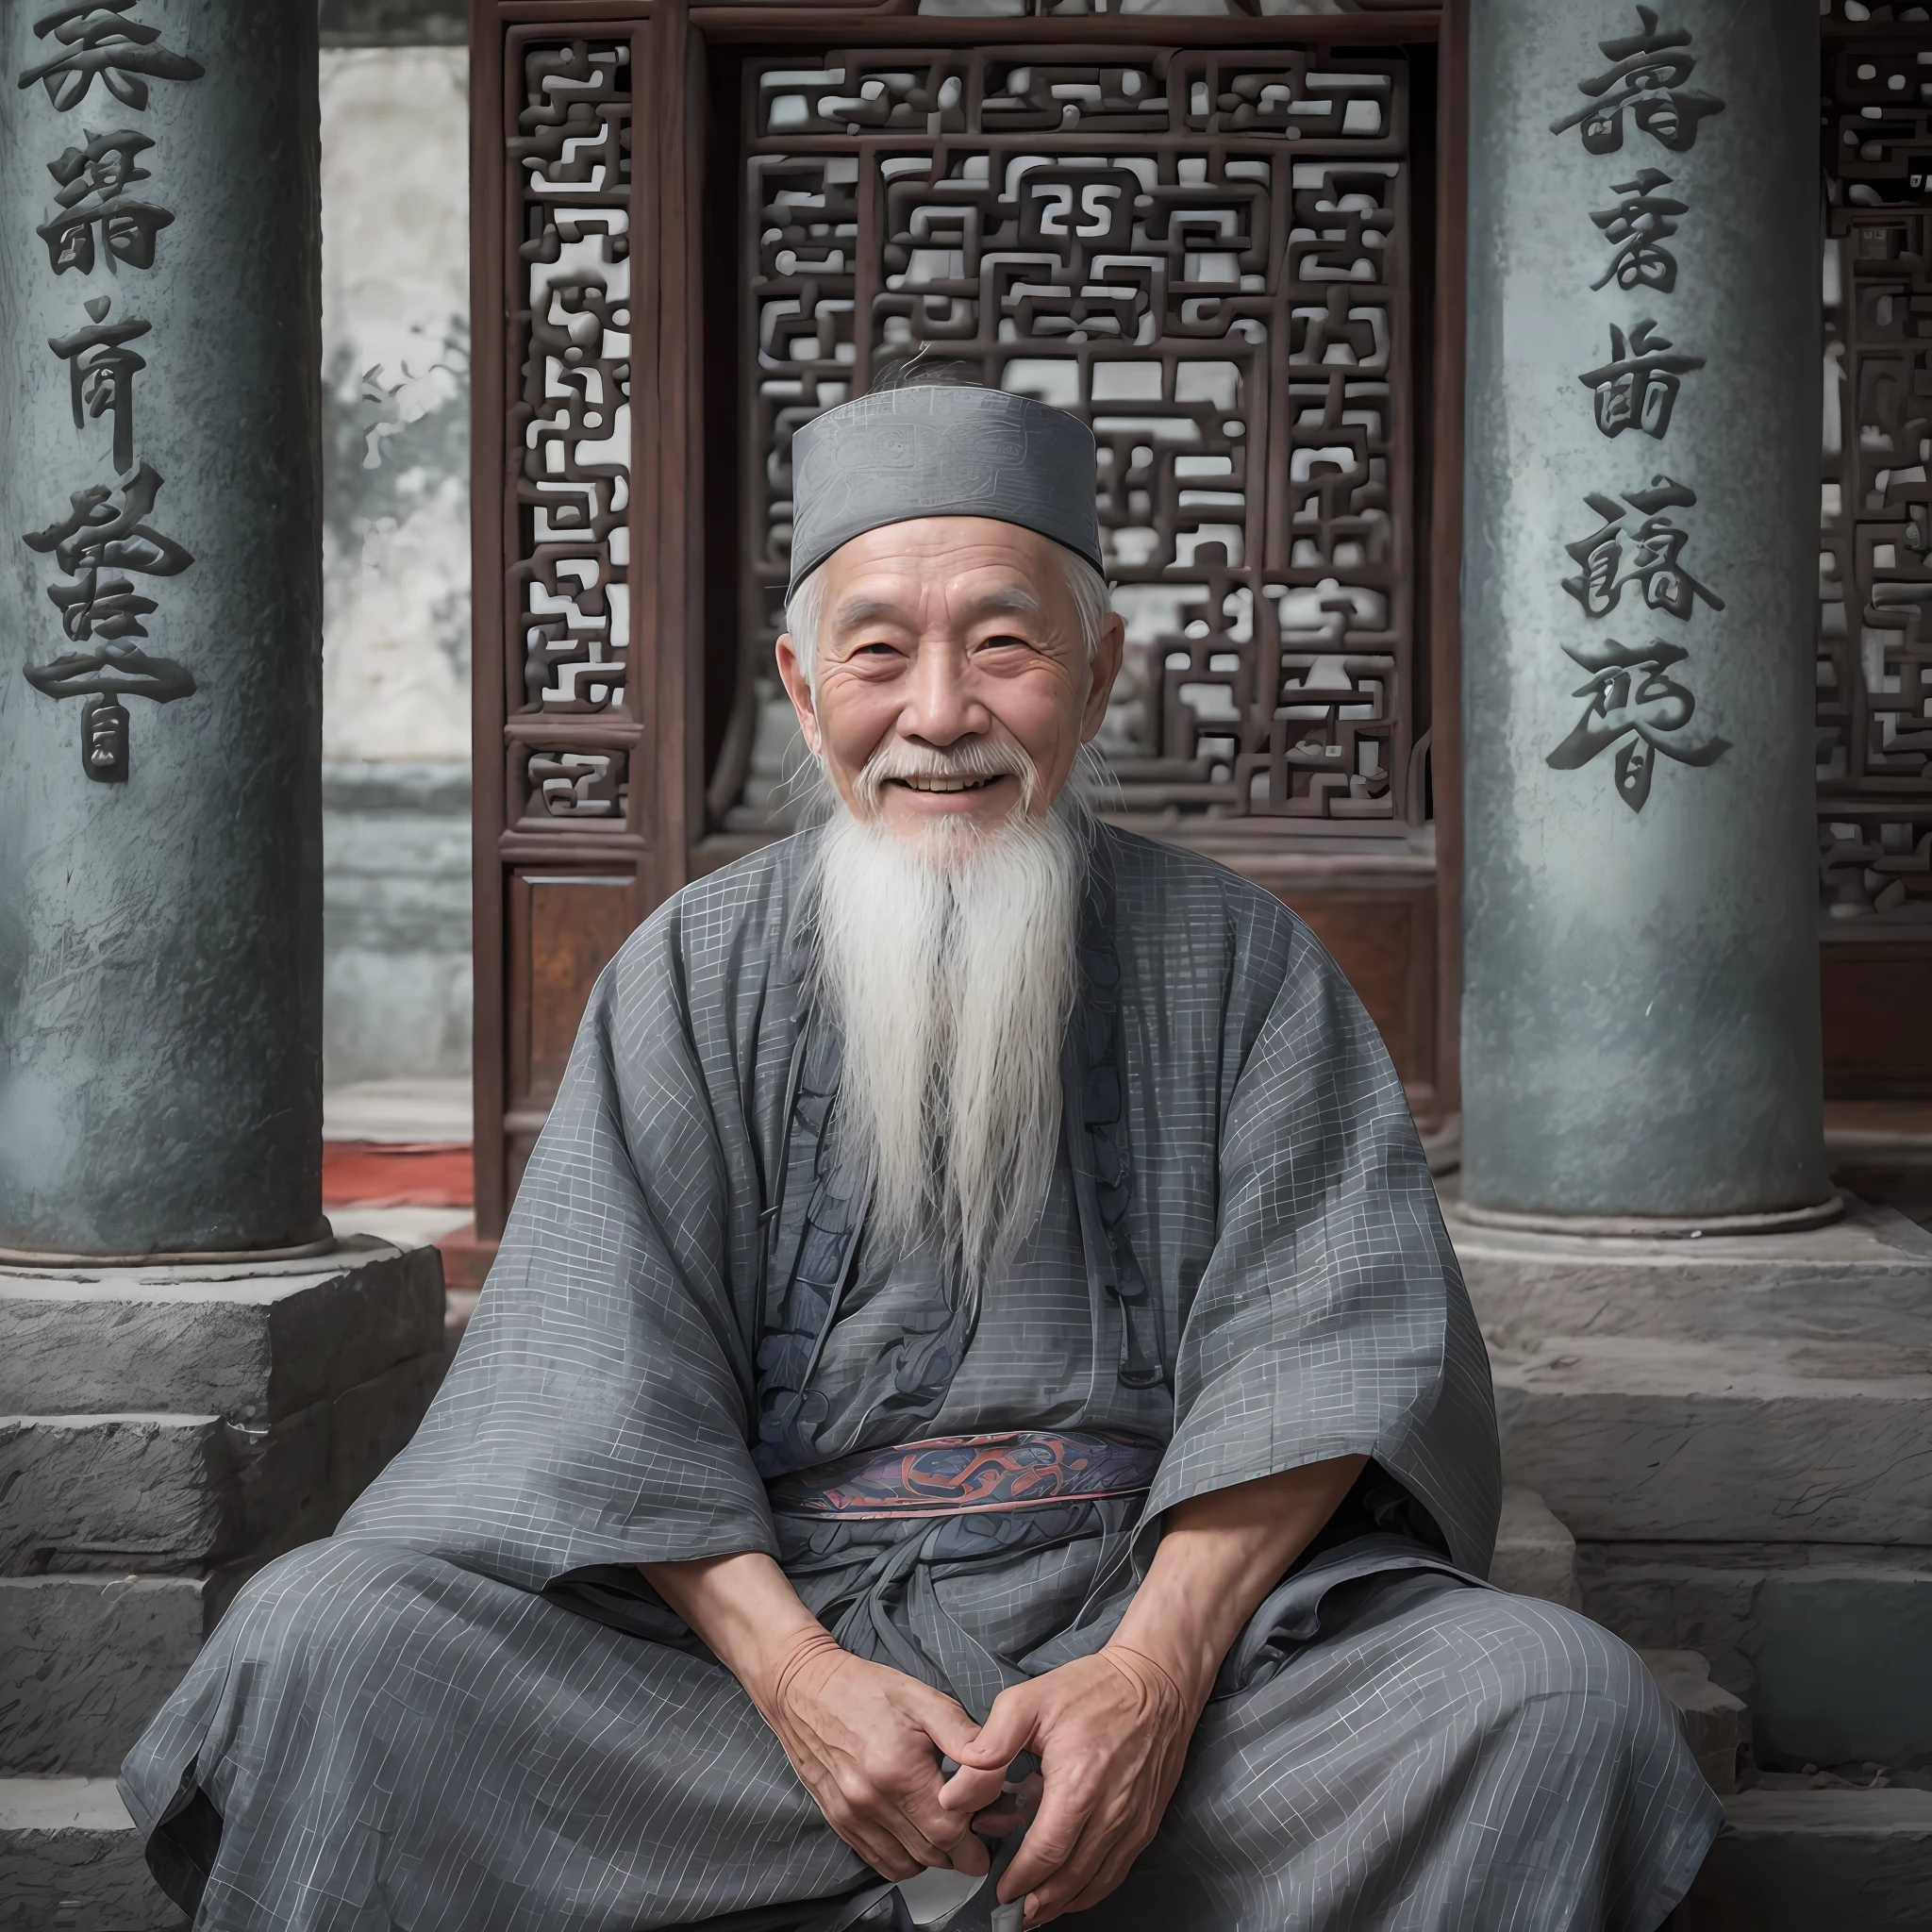 백발의 노인, 회색 고대 중국 의상을 입고, 웃고있는, 80세,렌즈 중앙,작은 흰 수염,고대의,
실내, 중국 도교 사원, 고대의 chinese temple,책상다리를 하고 앉아 있는 것,고대의 Chinese architecture,
중간 샷, 최고의 품질,사진을 찍다,